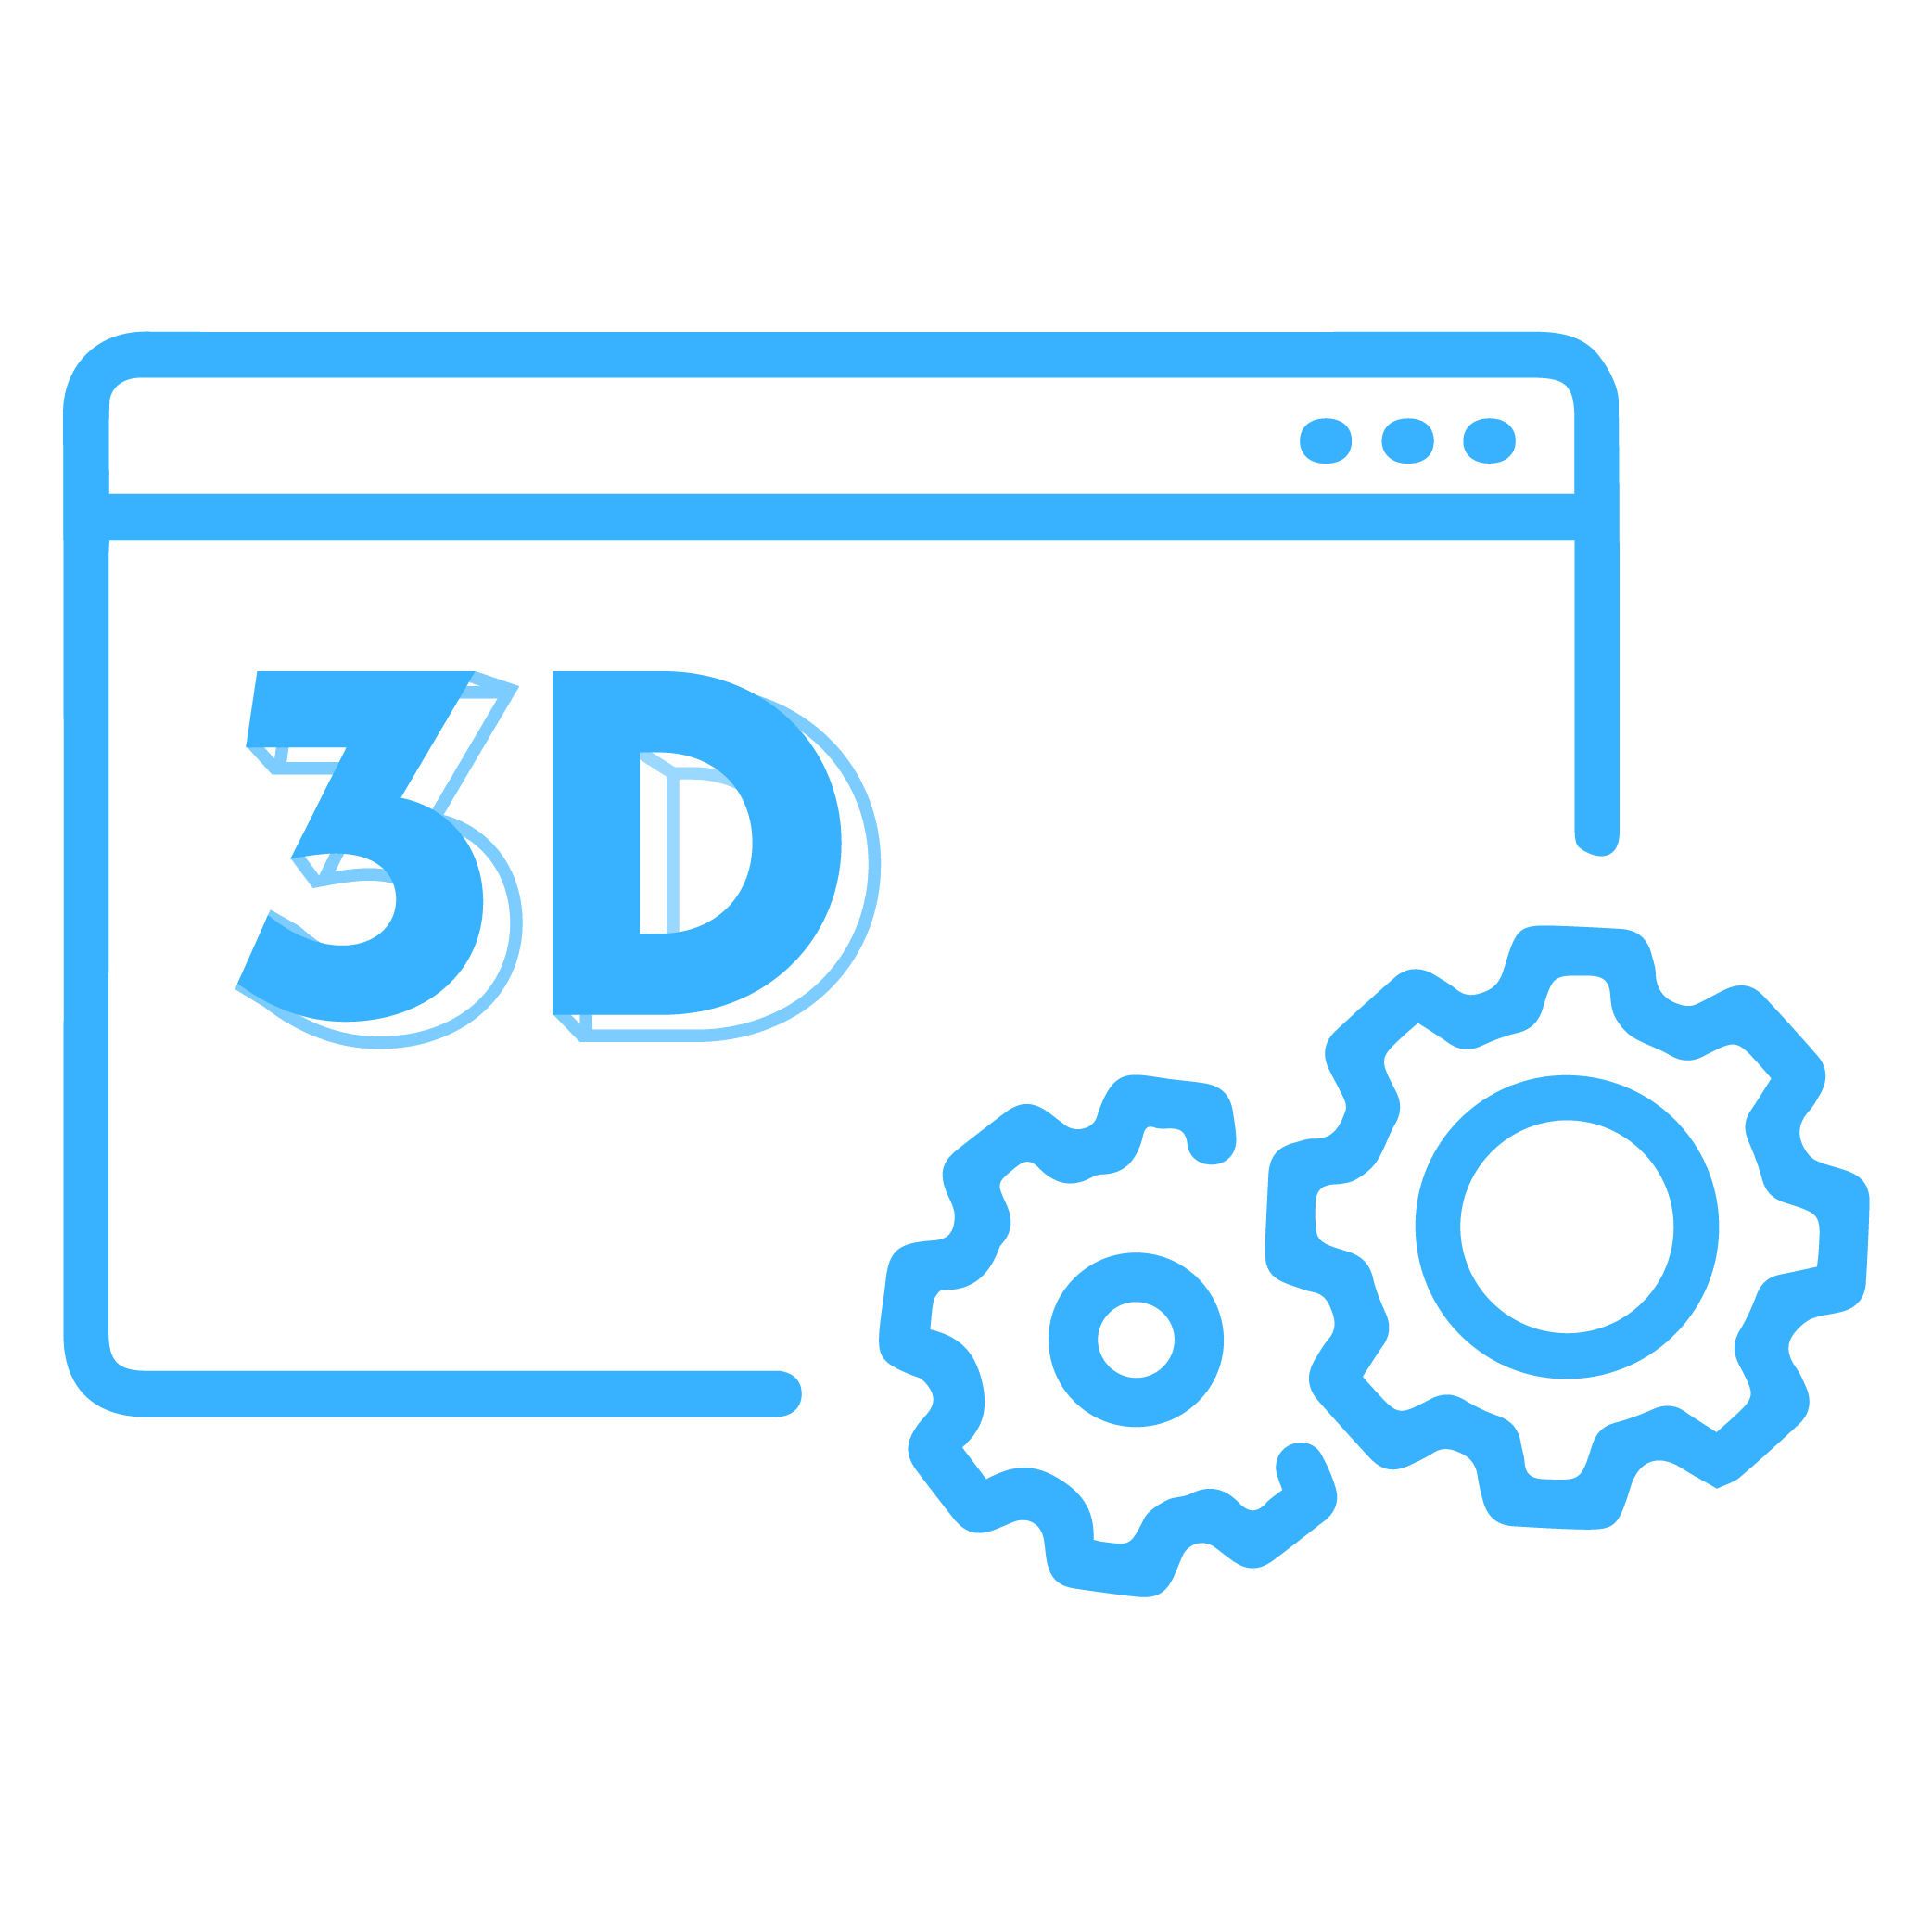 world's top 3D software